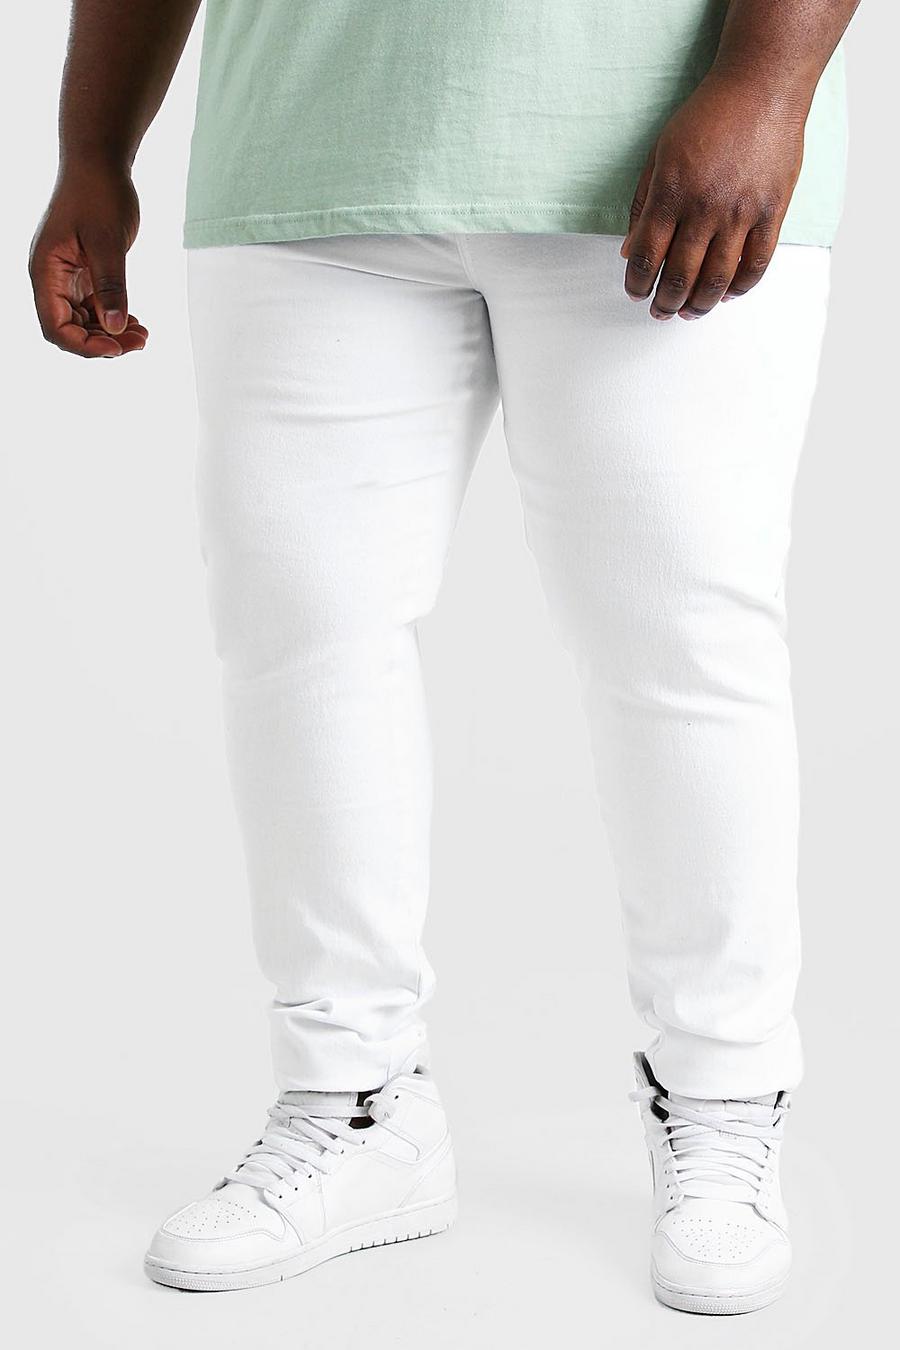 לבן סקיני ג'ינס לגברים גדולים וגבוהים image number 1